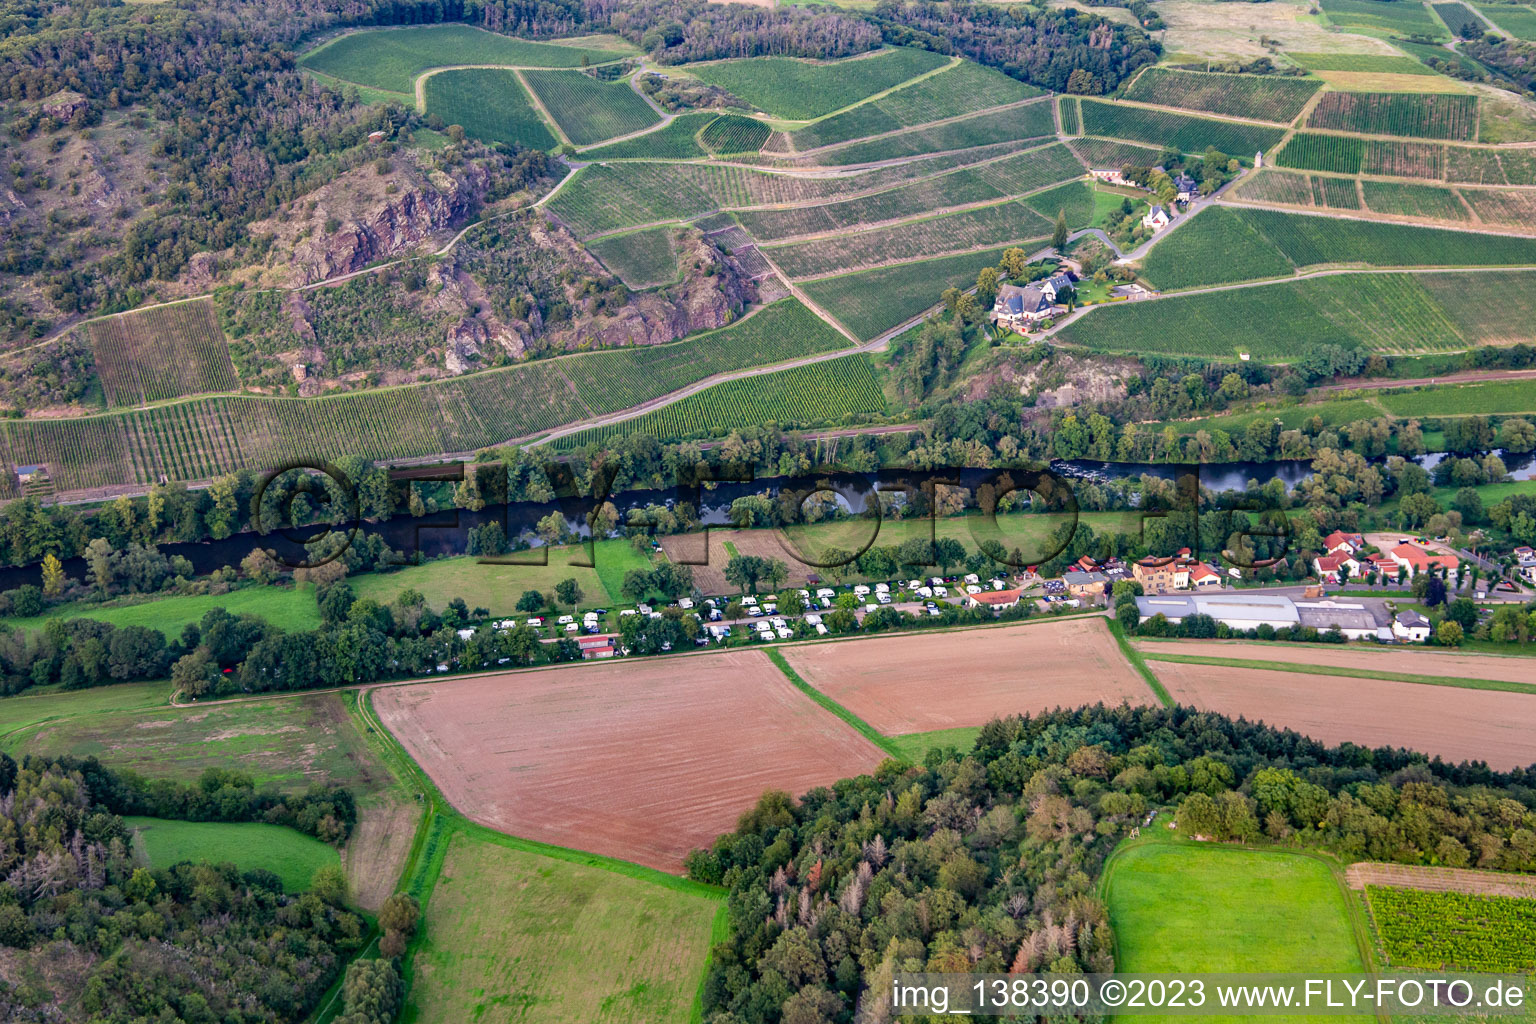 Vue aérienne de Camping Nahetal depuis le sud à Oberhausen an der Nahe dans le département Rhénanie-Palatinat, Allemagne